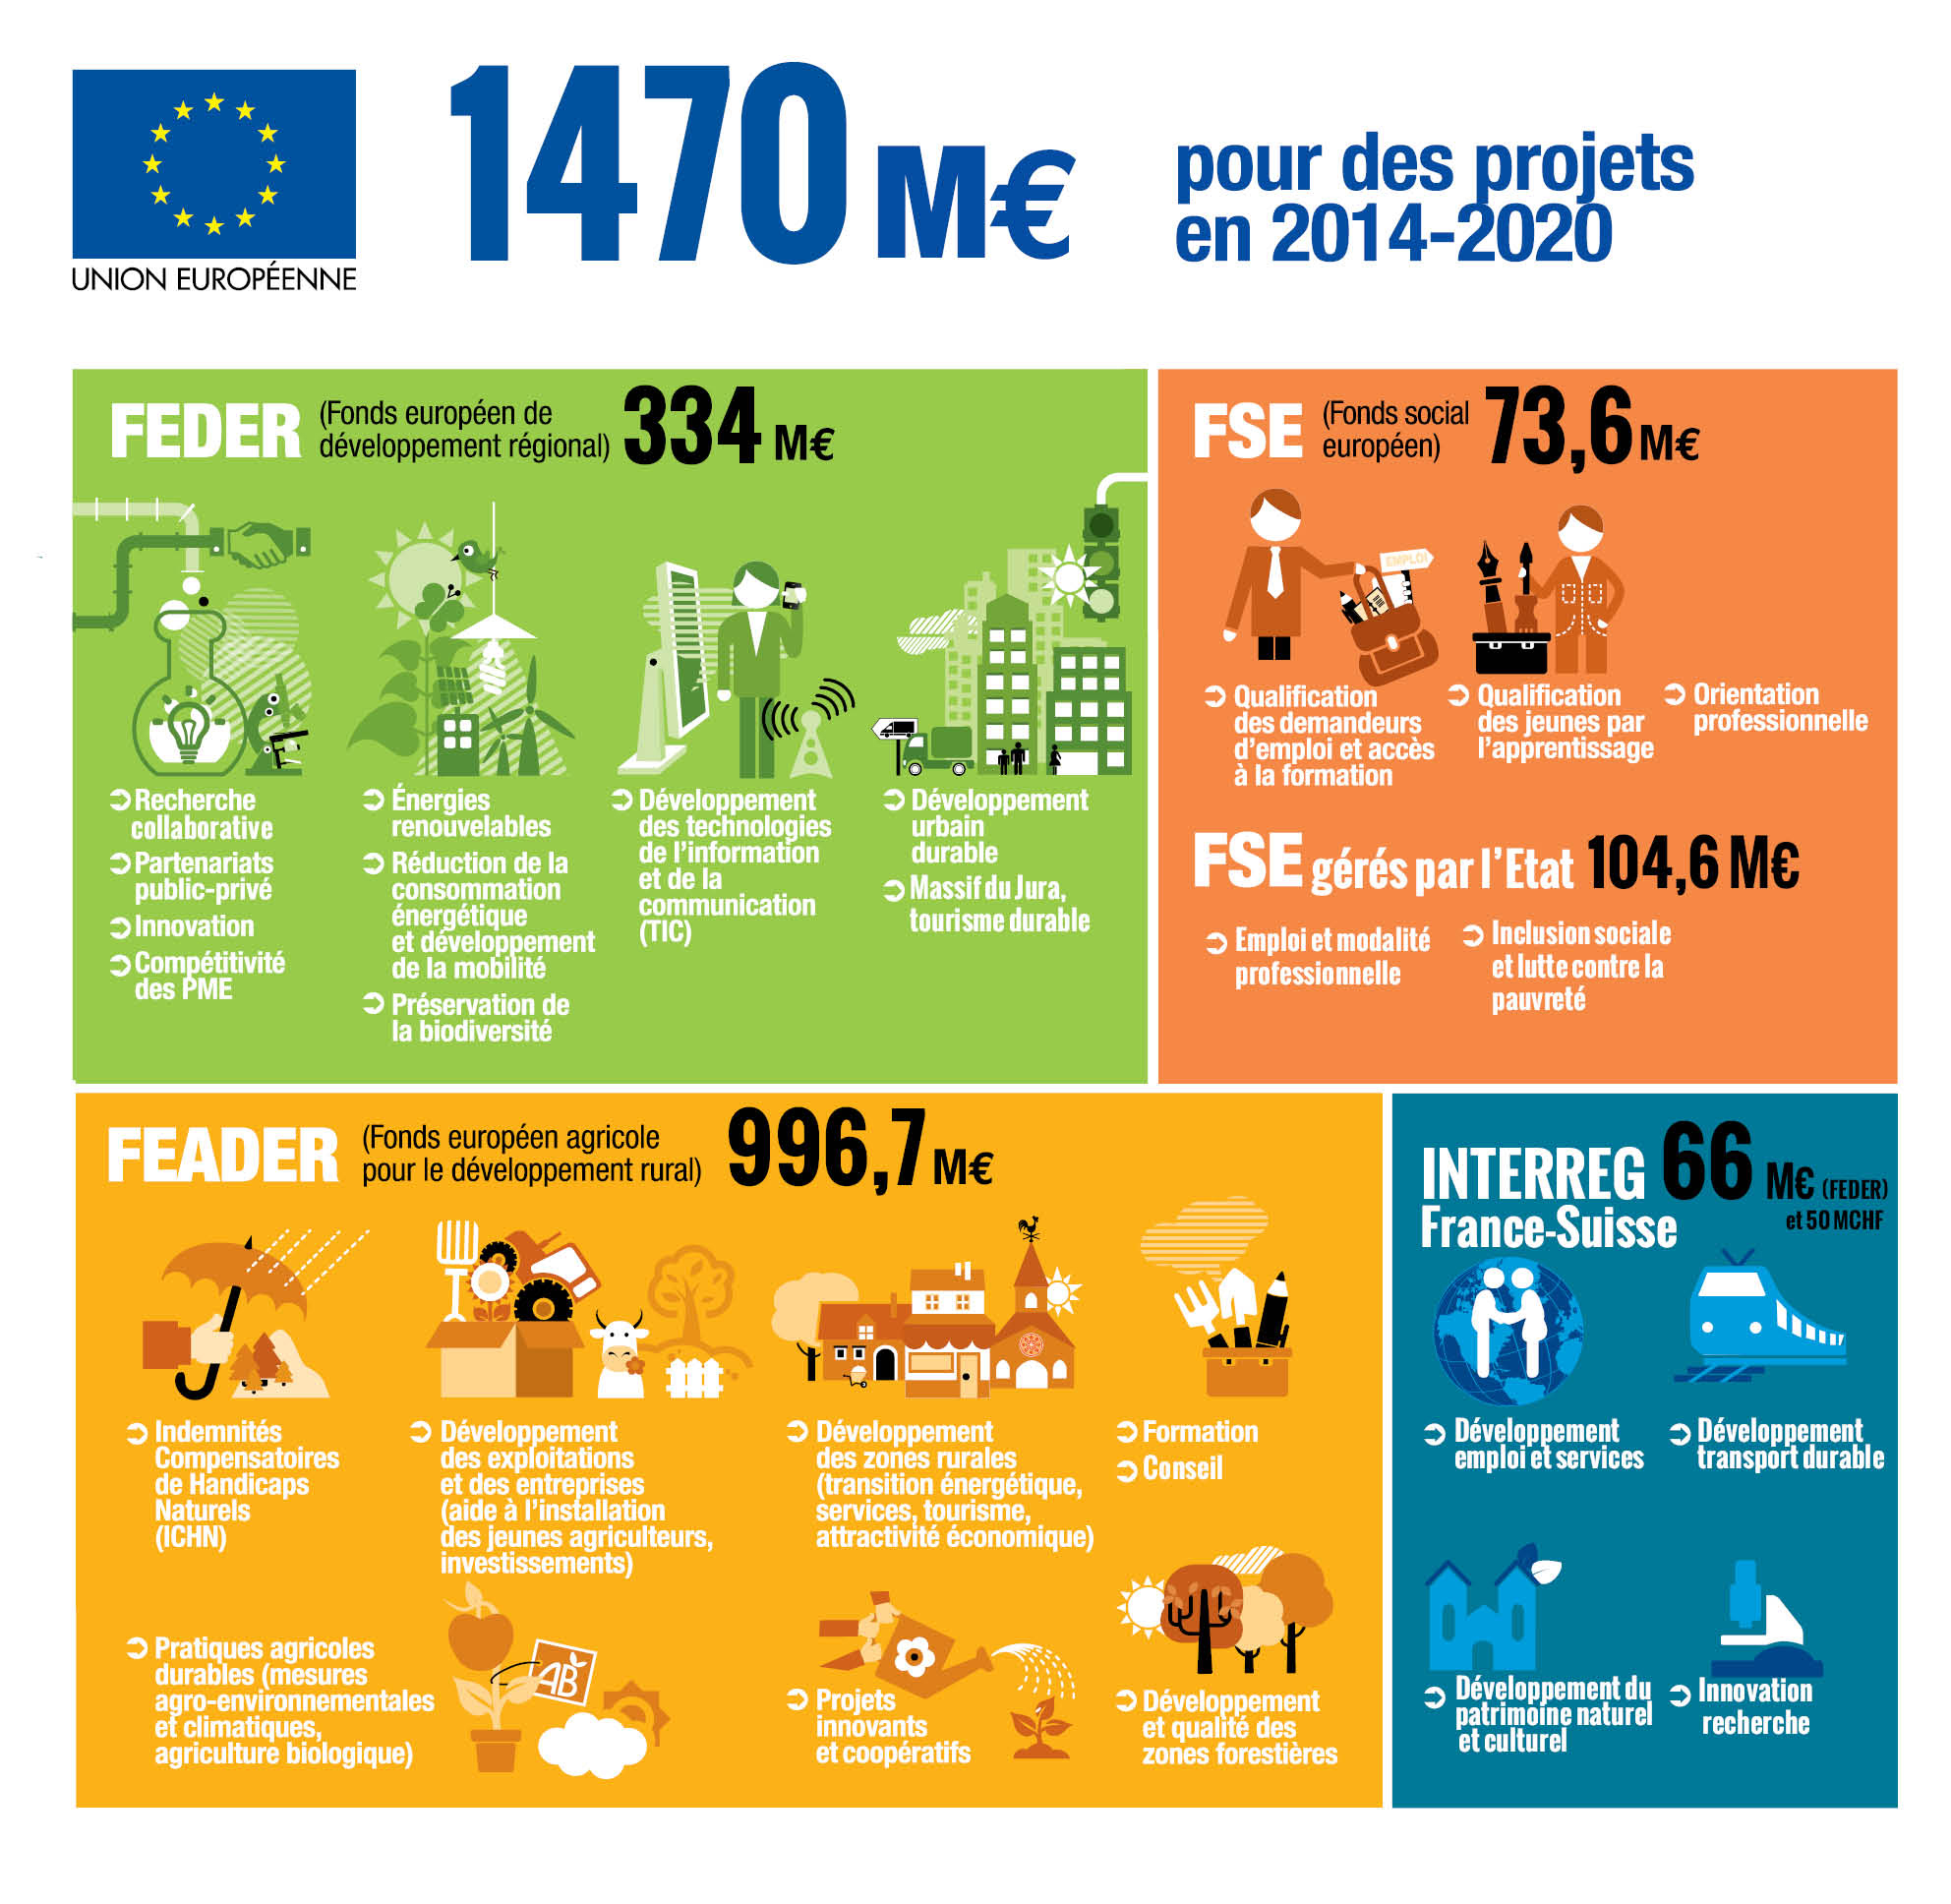 1 470 M€ de fonds européens pour des projets en 2014-2020